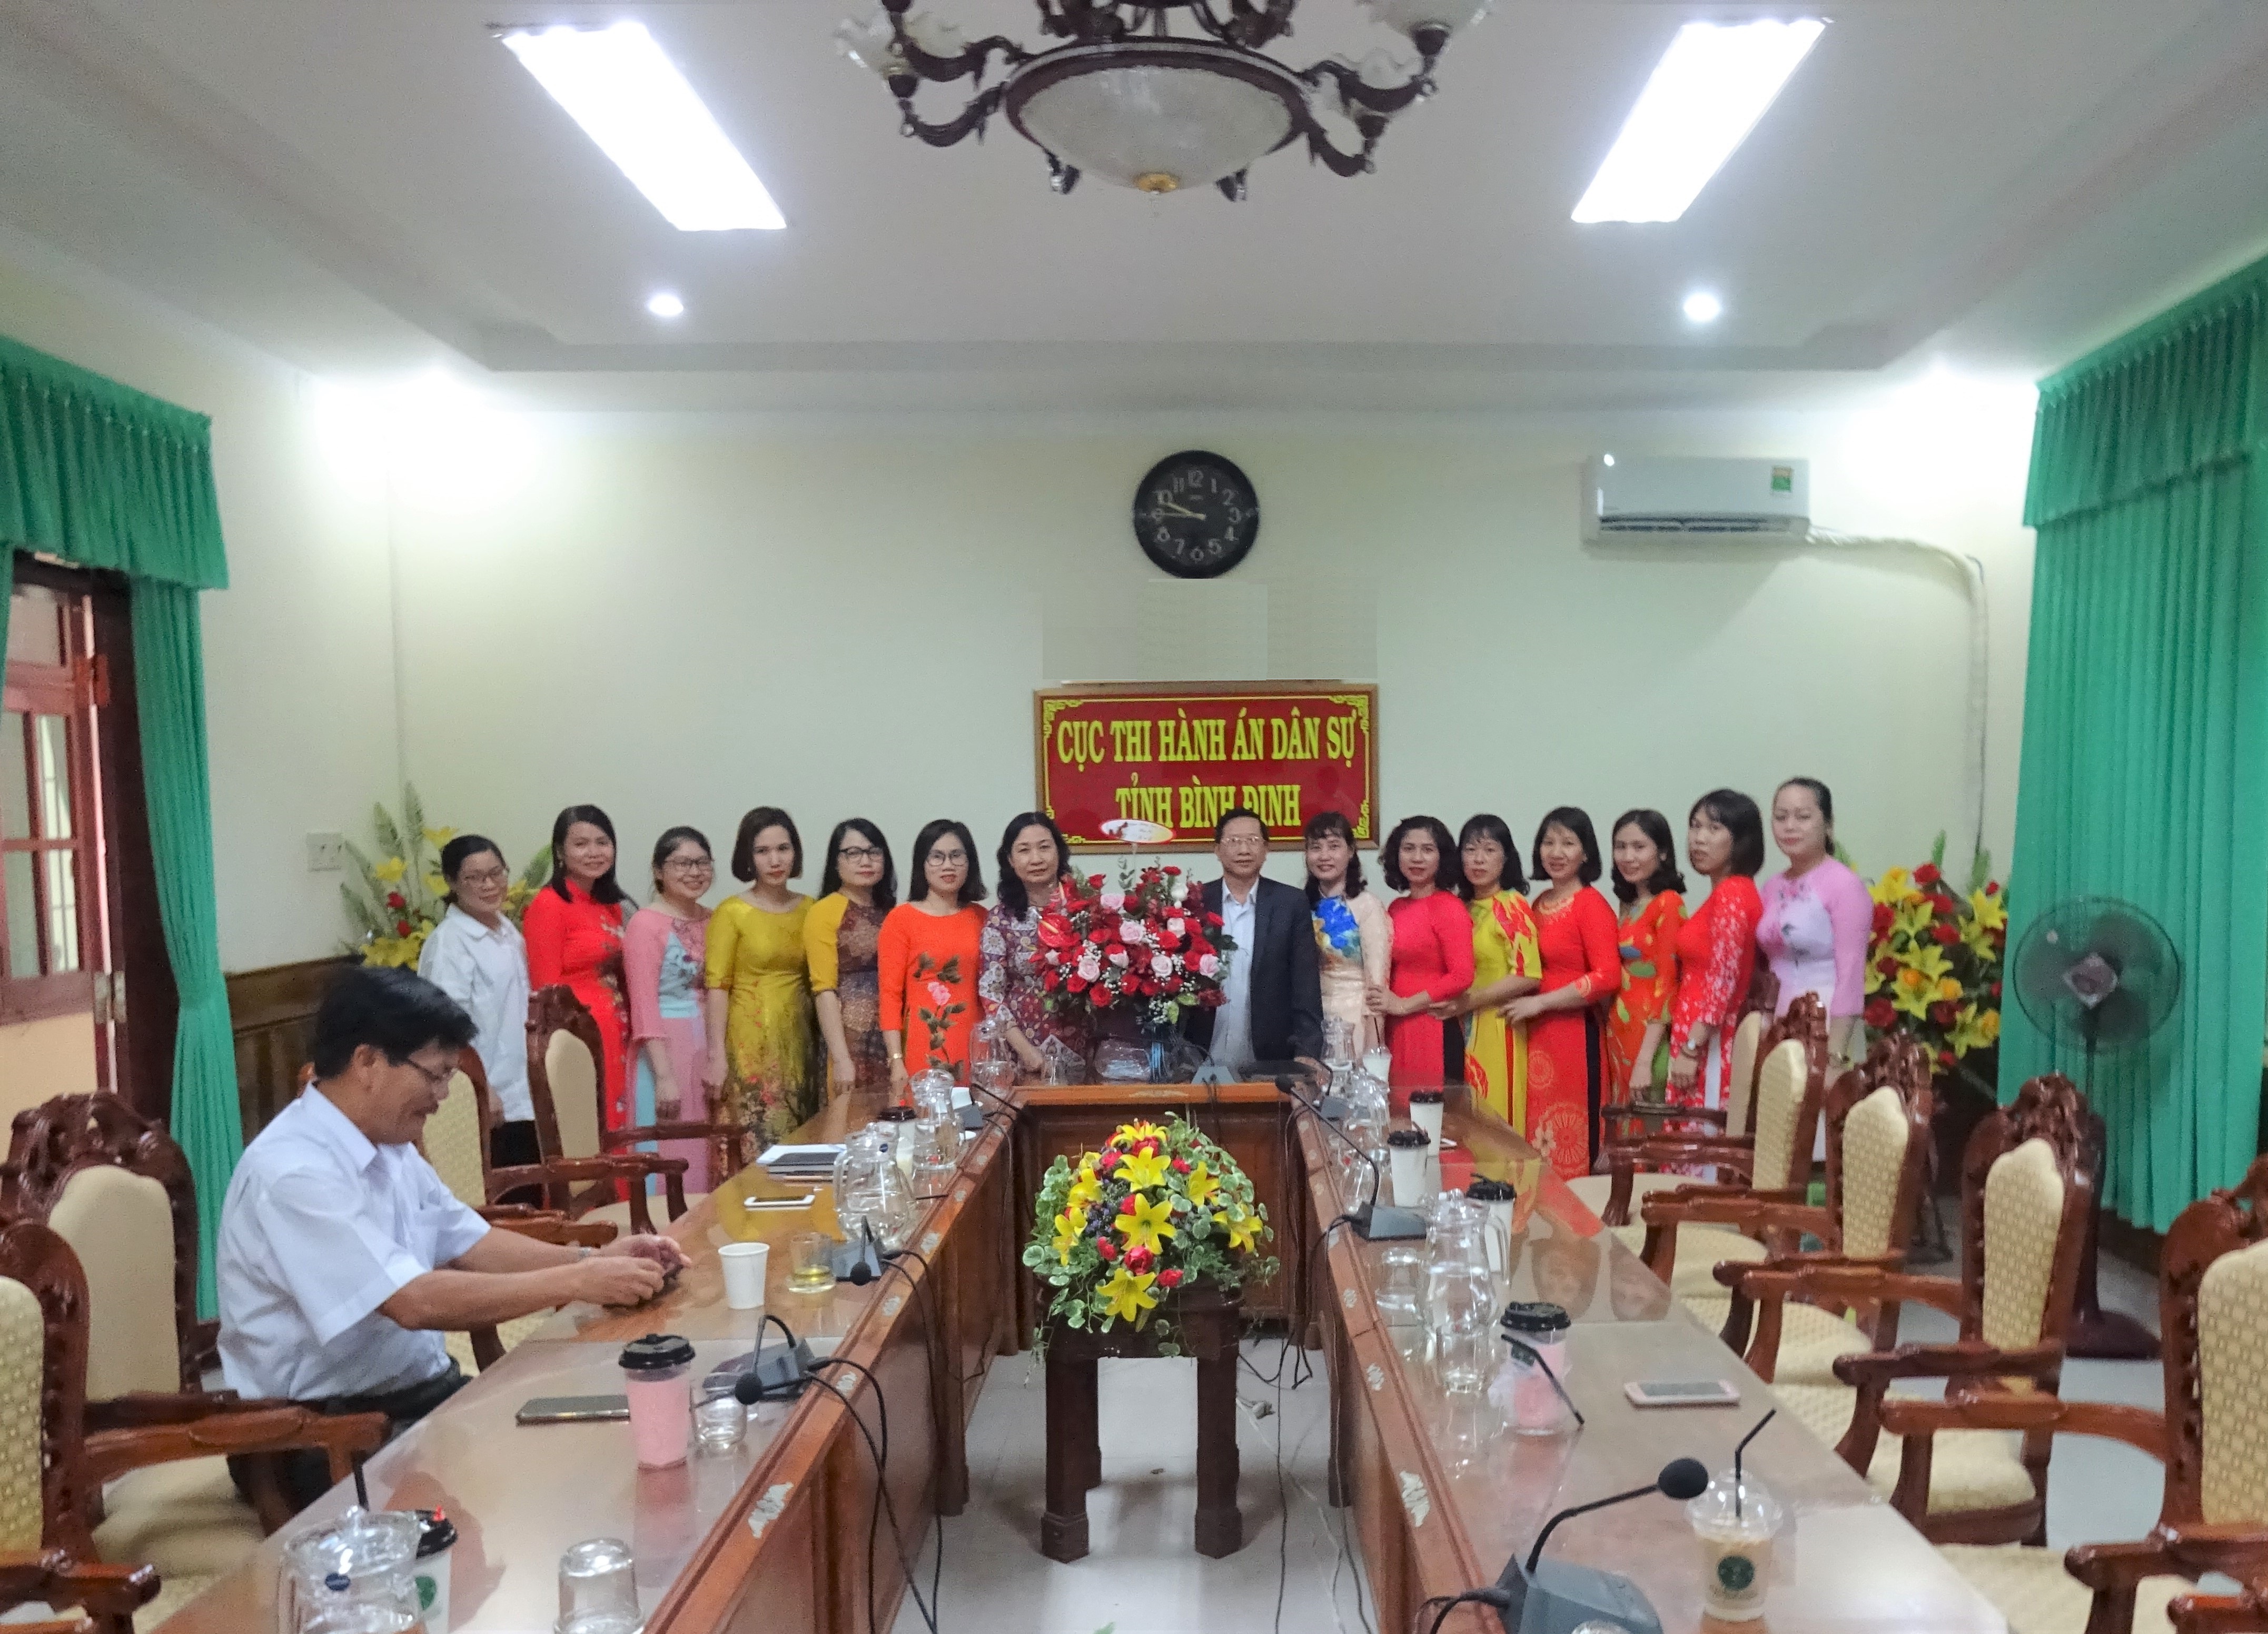 Lãnh đạo Cục THADS tỉnh gặp mặt nữ công chức, người lao động nhân ngày quốc tế phụ nữ 8.3